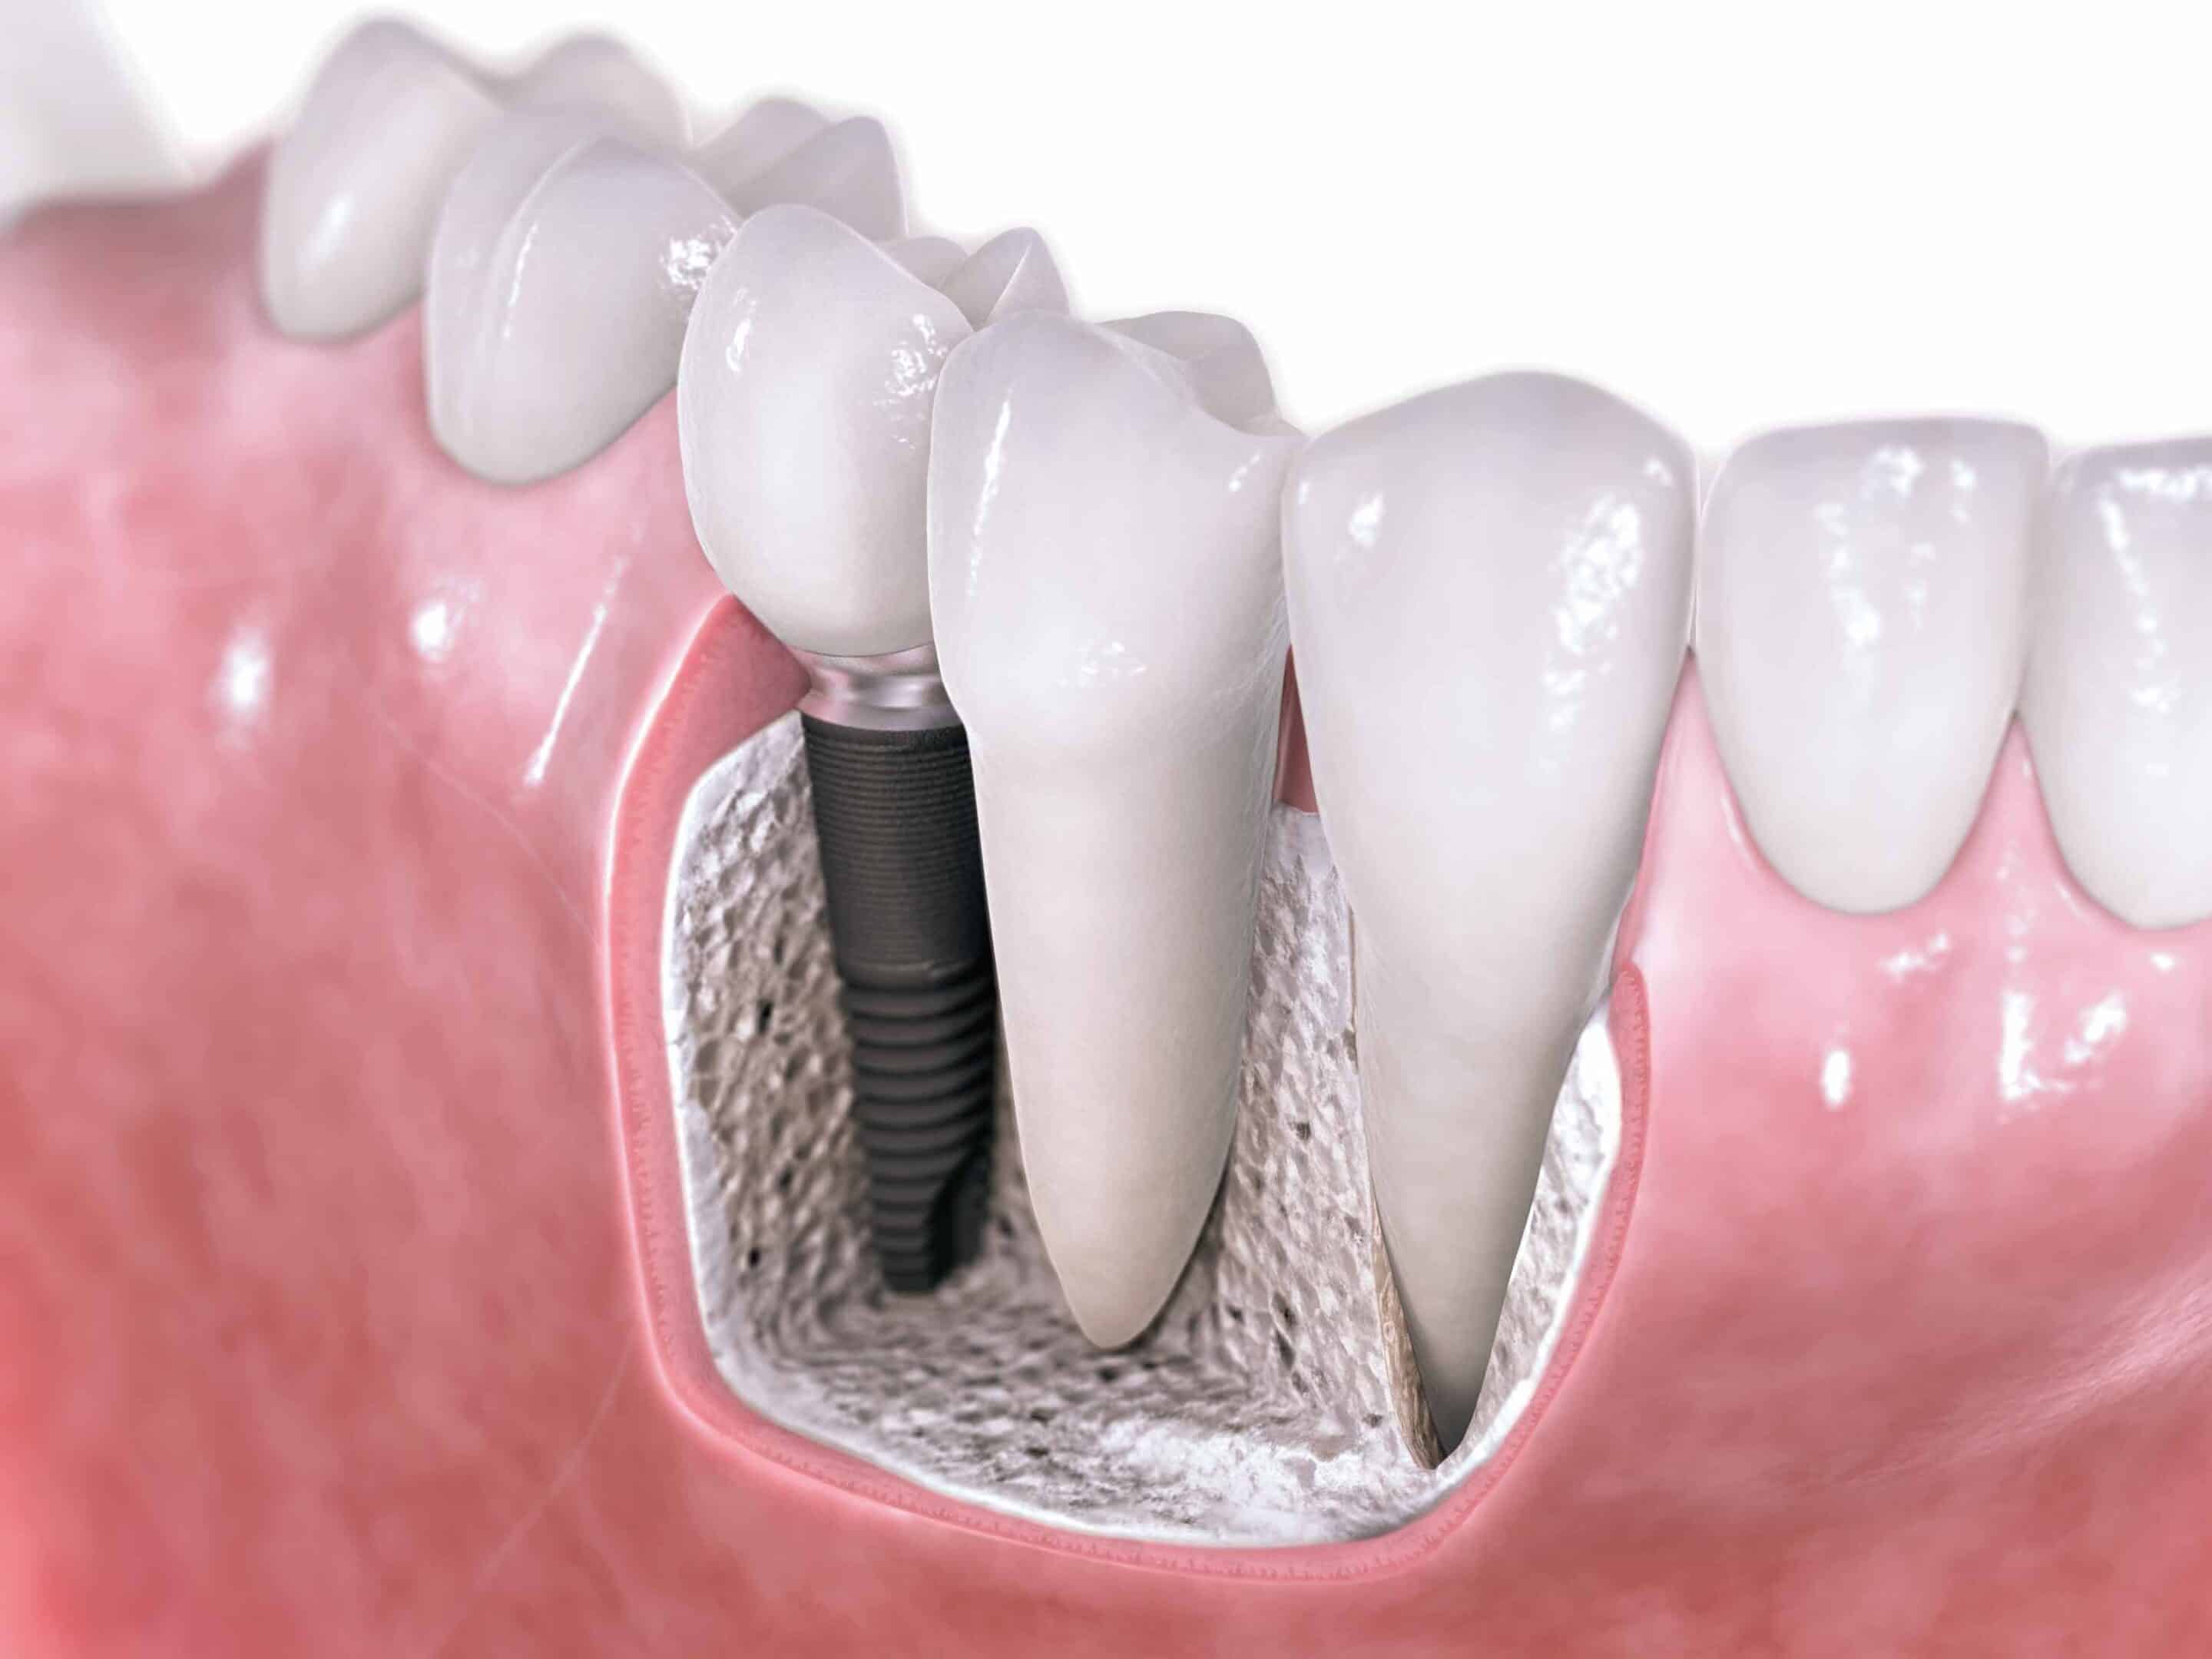 Implante com dente solto – é grave? Veja aqui como resolver